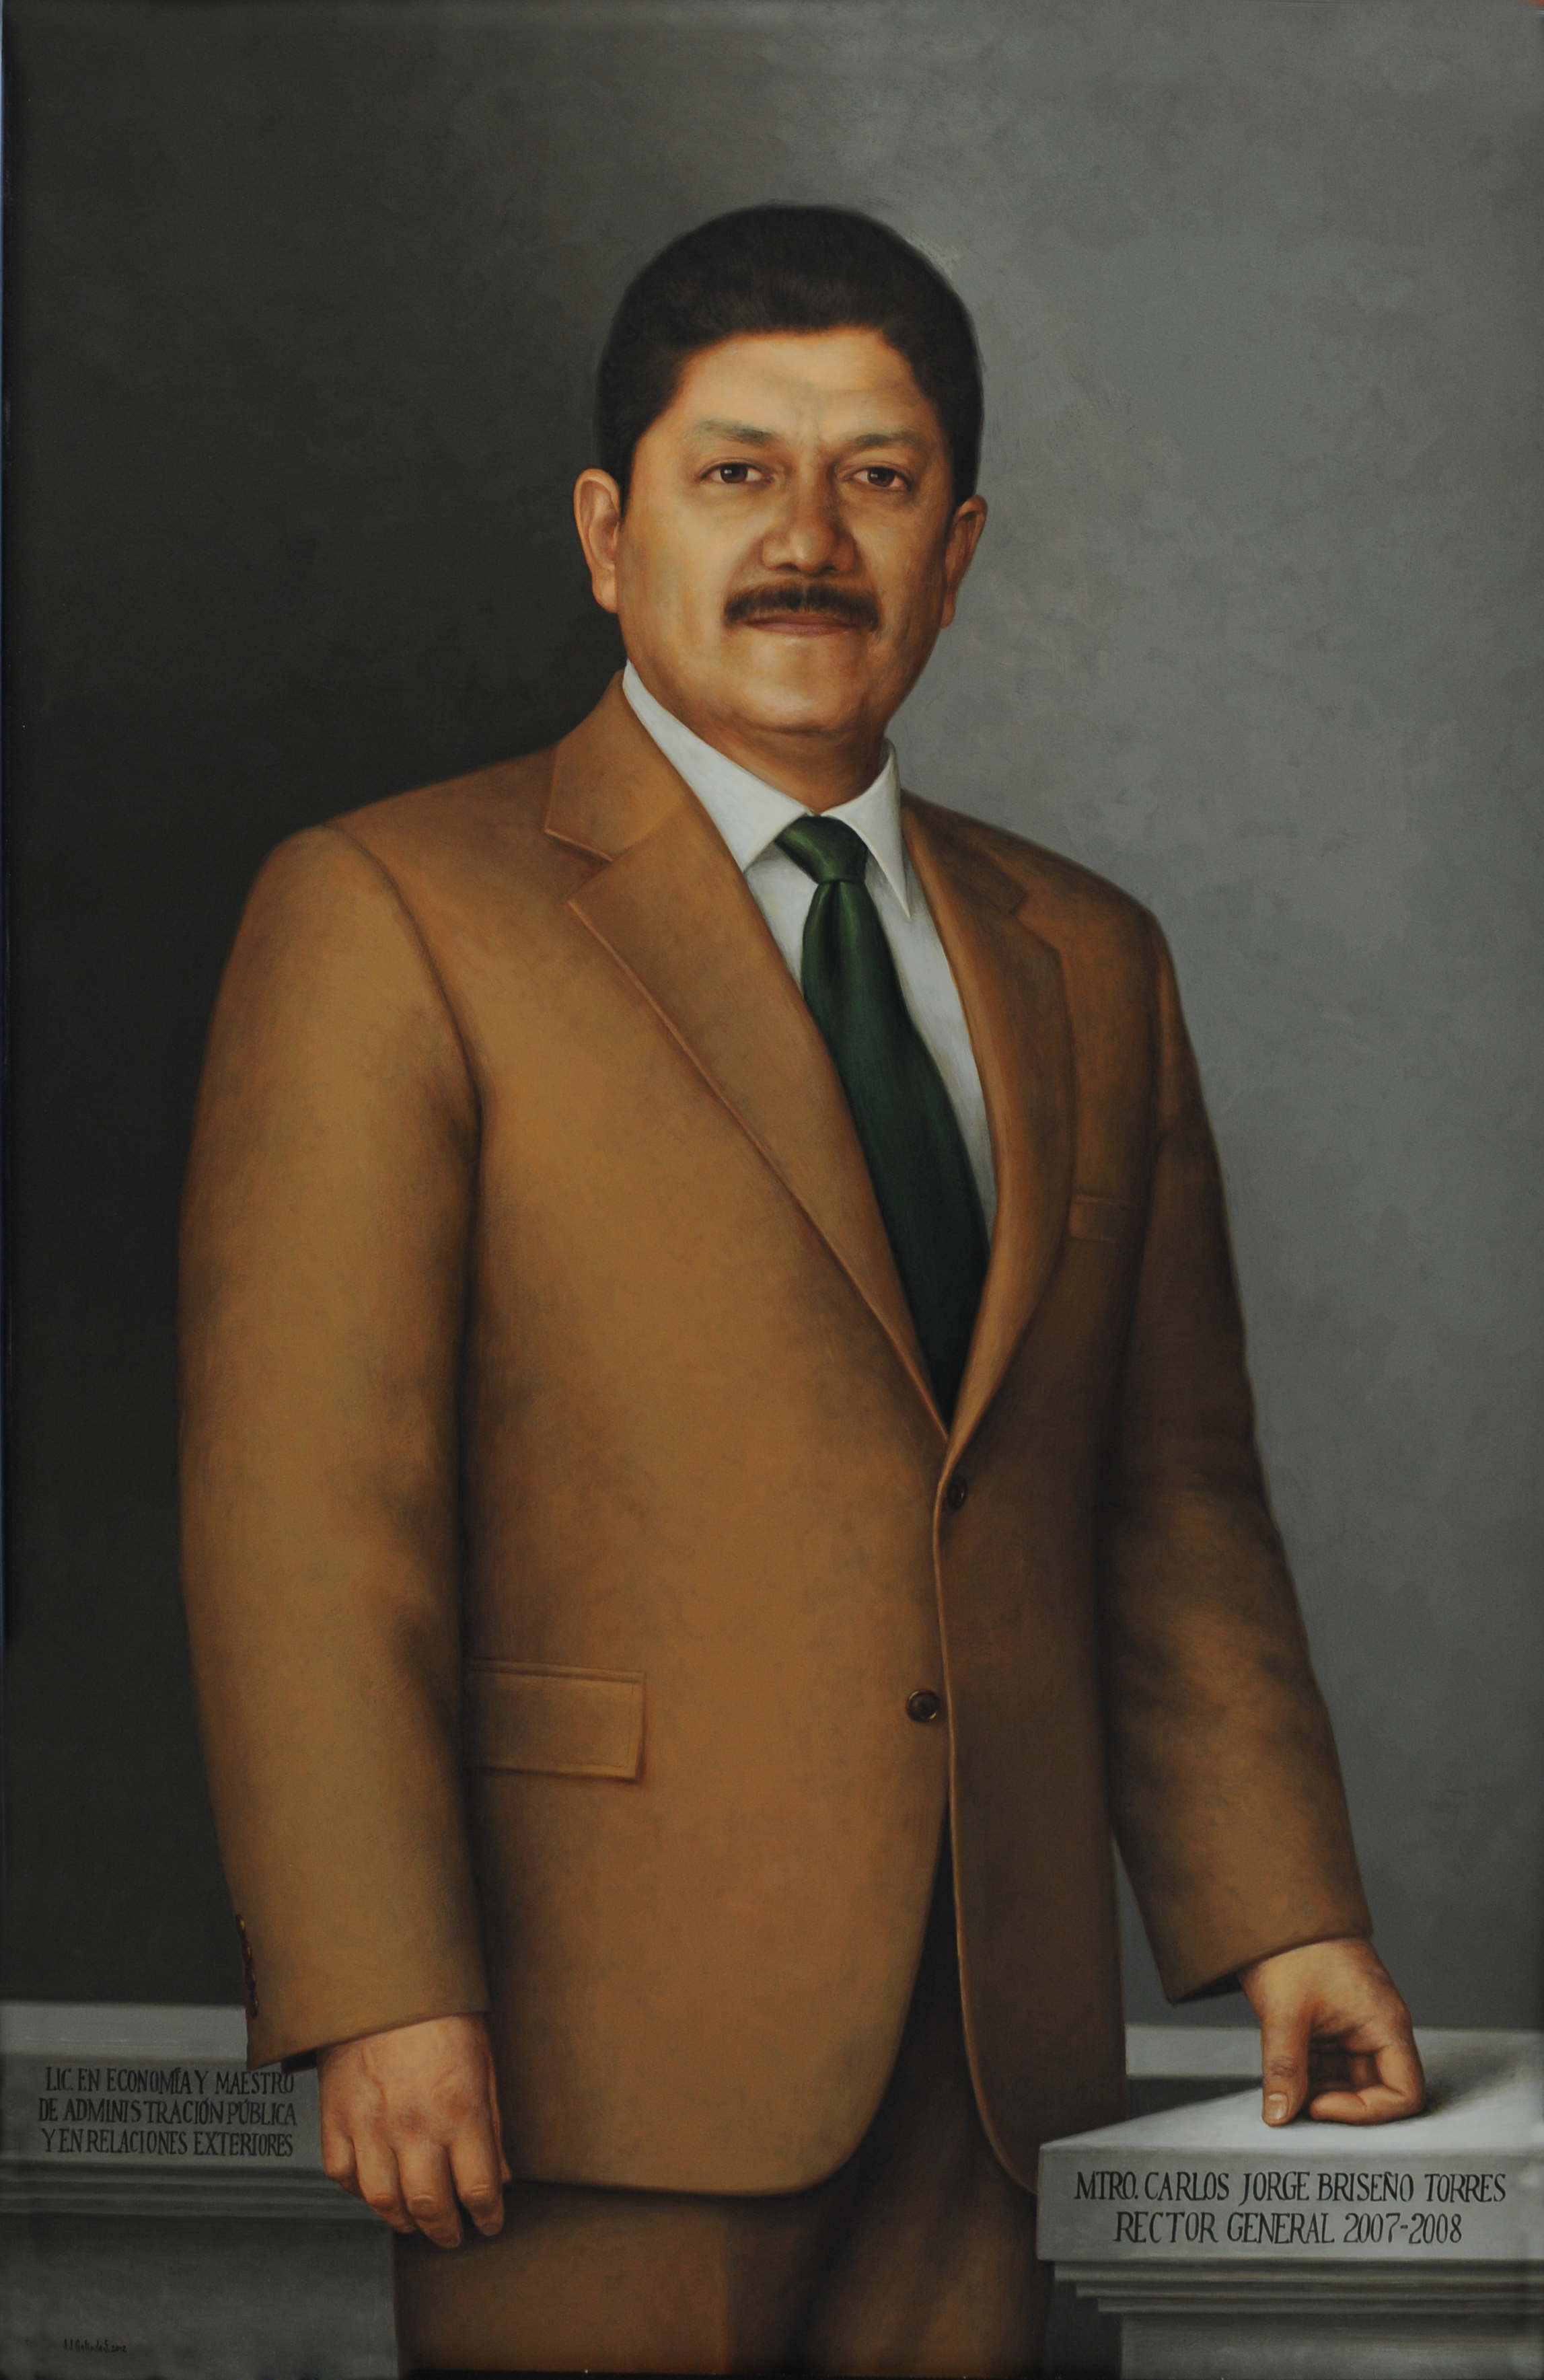 Carlos Jorge Briseño Torres